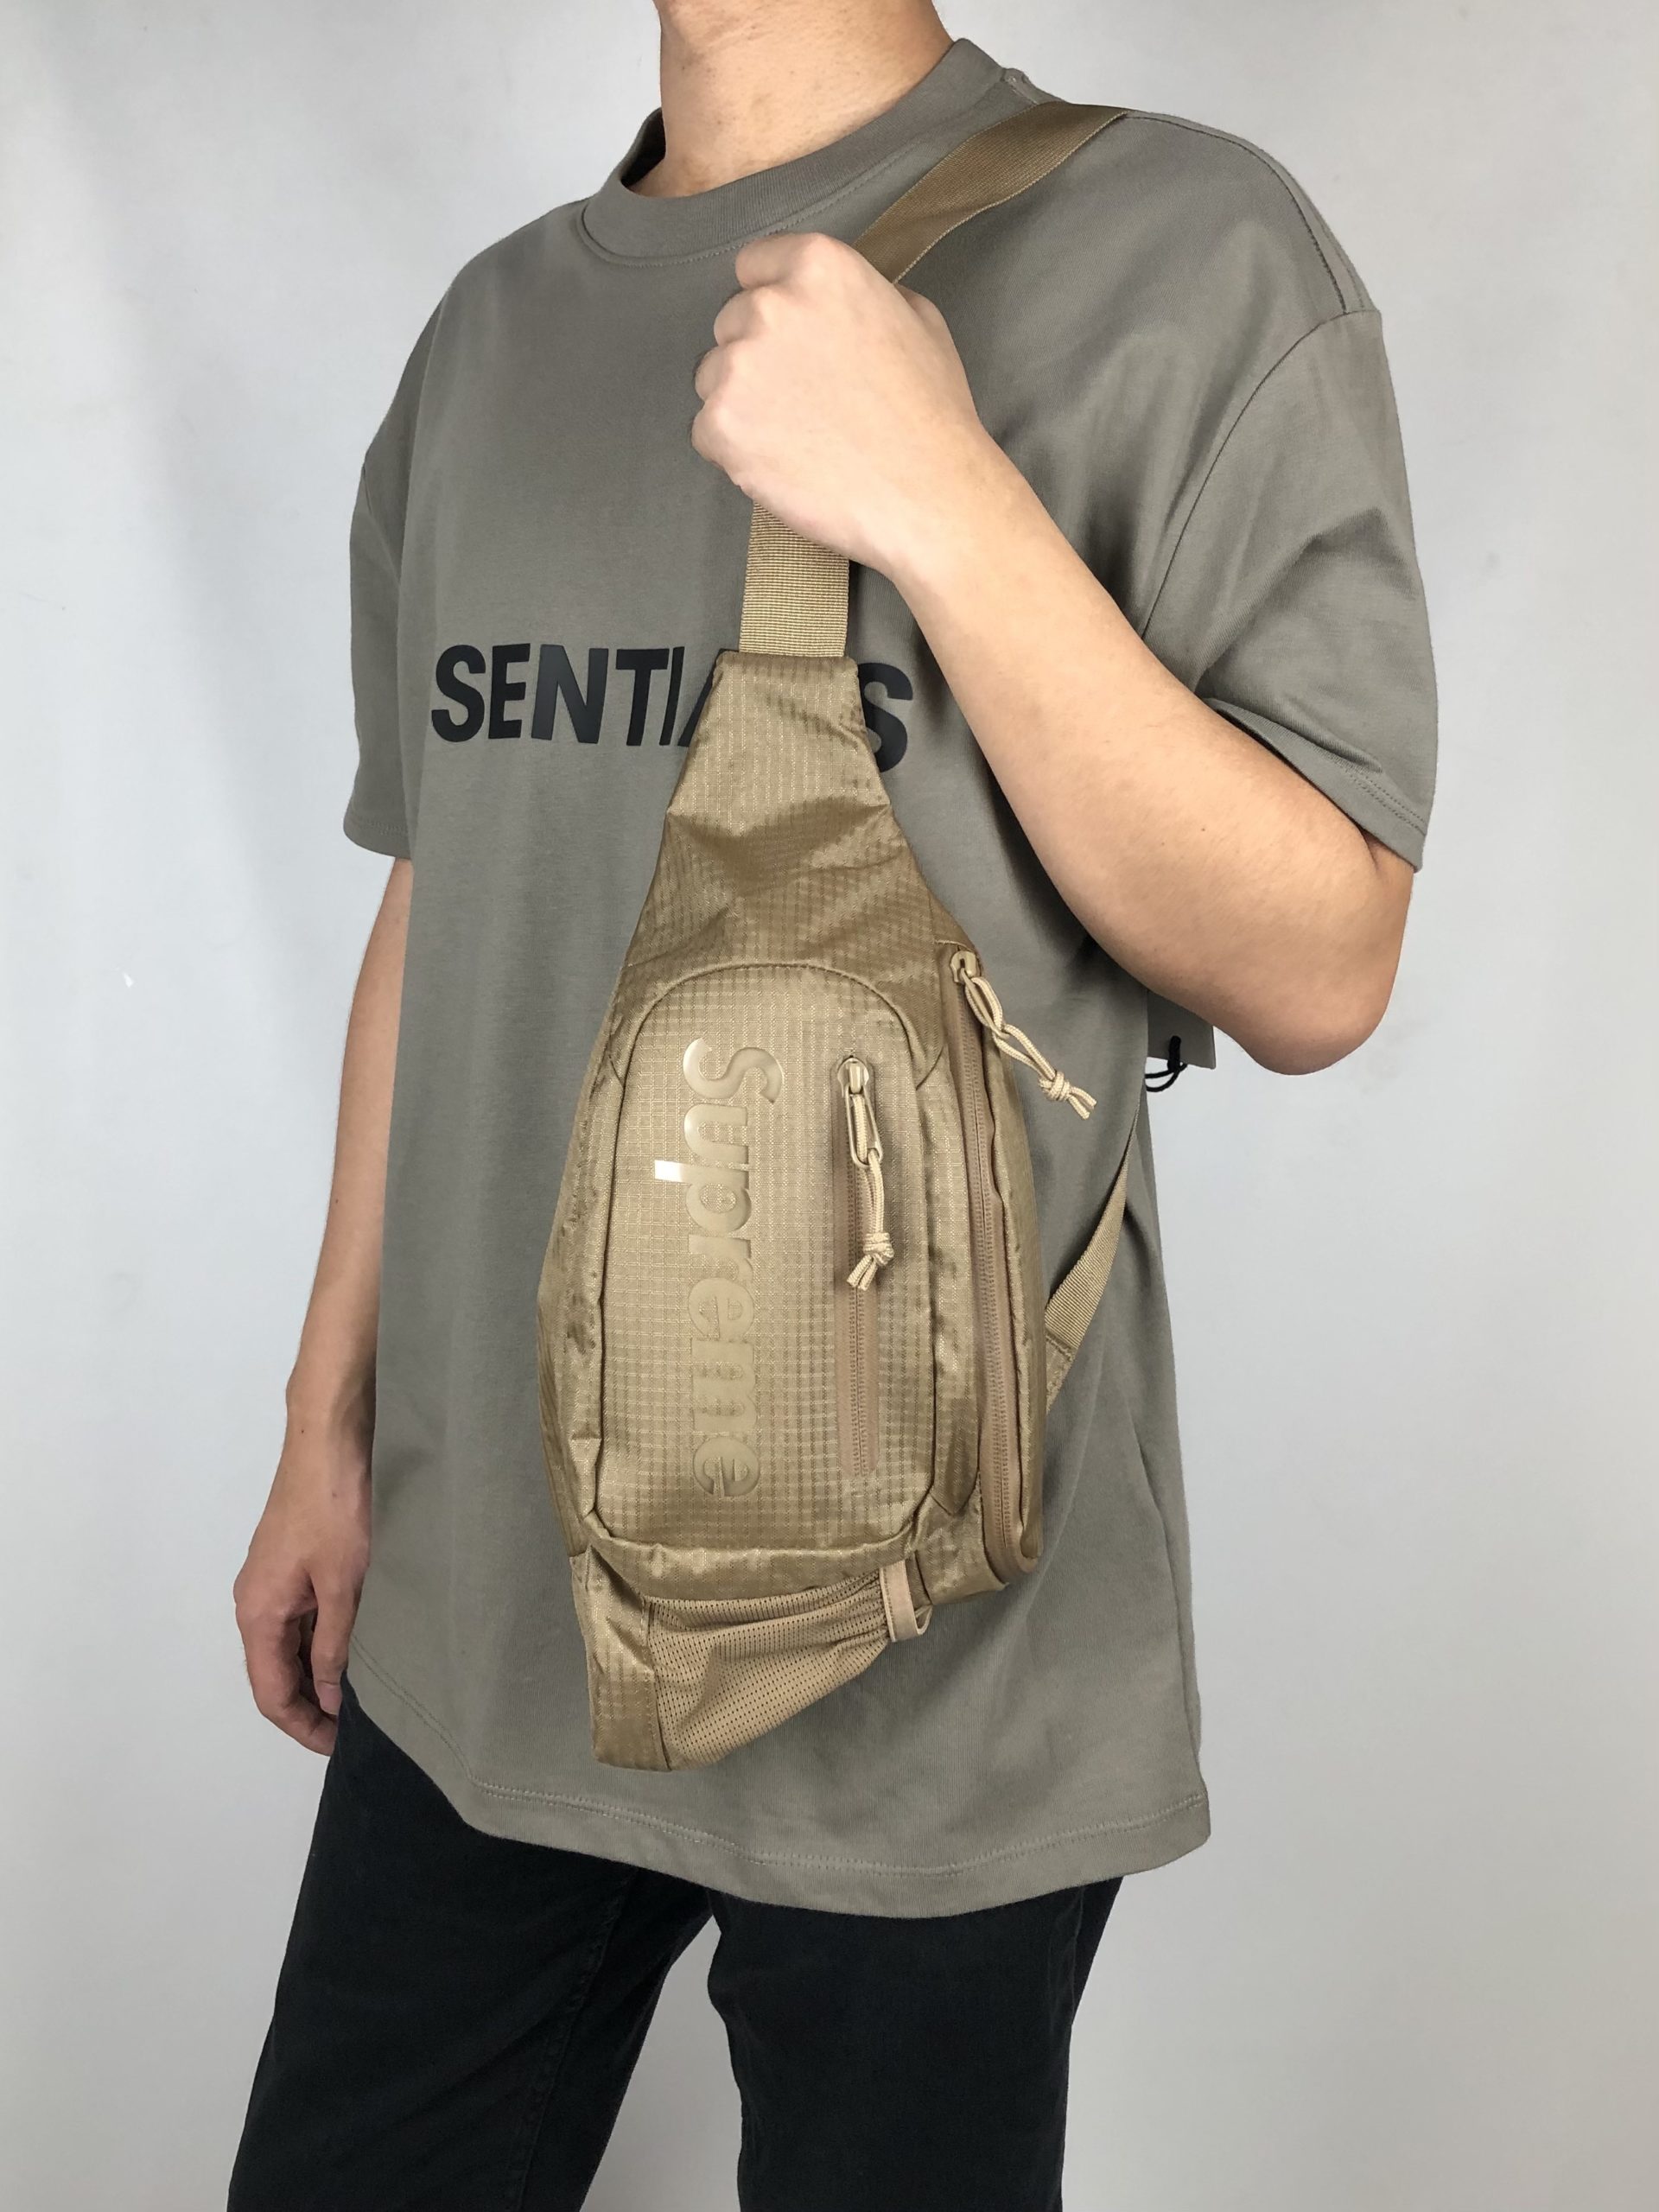 supreme sling bag Tan